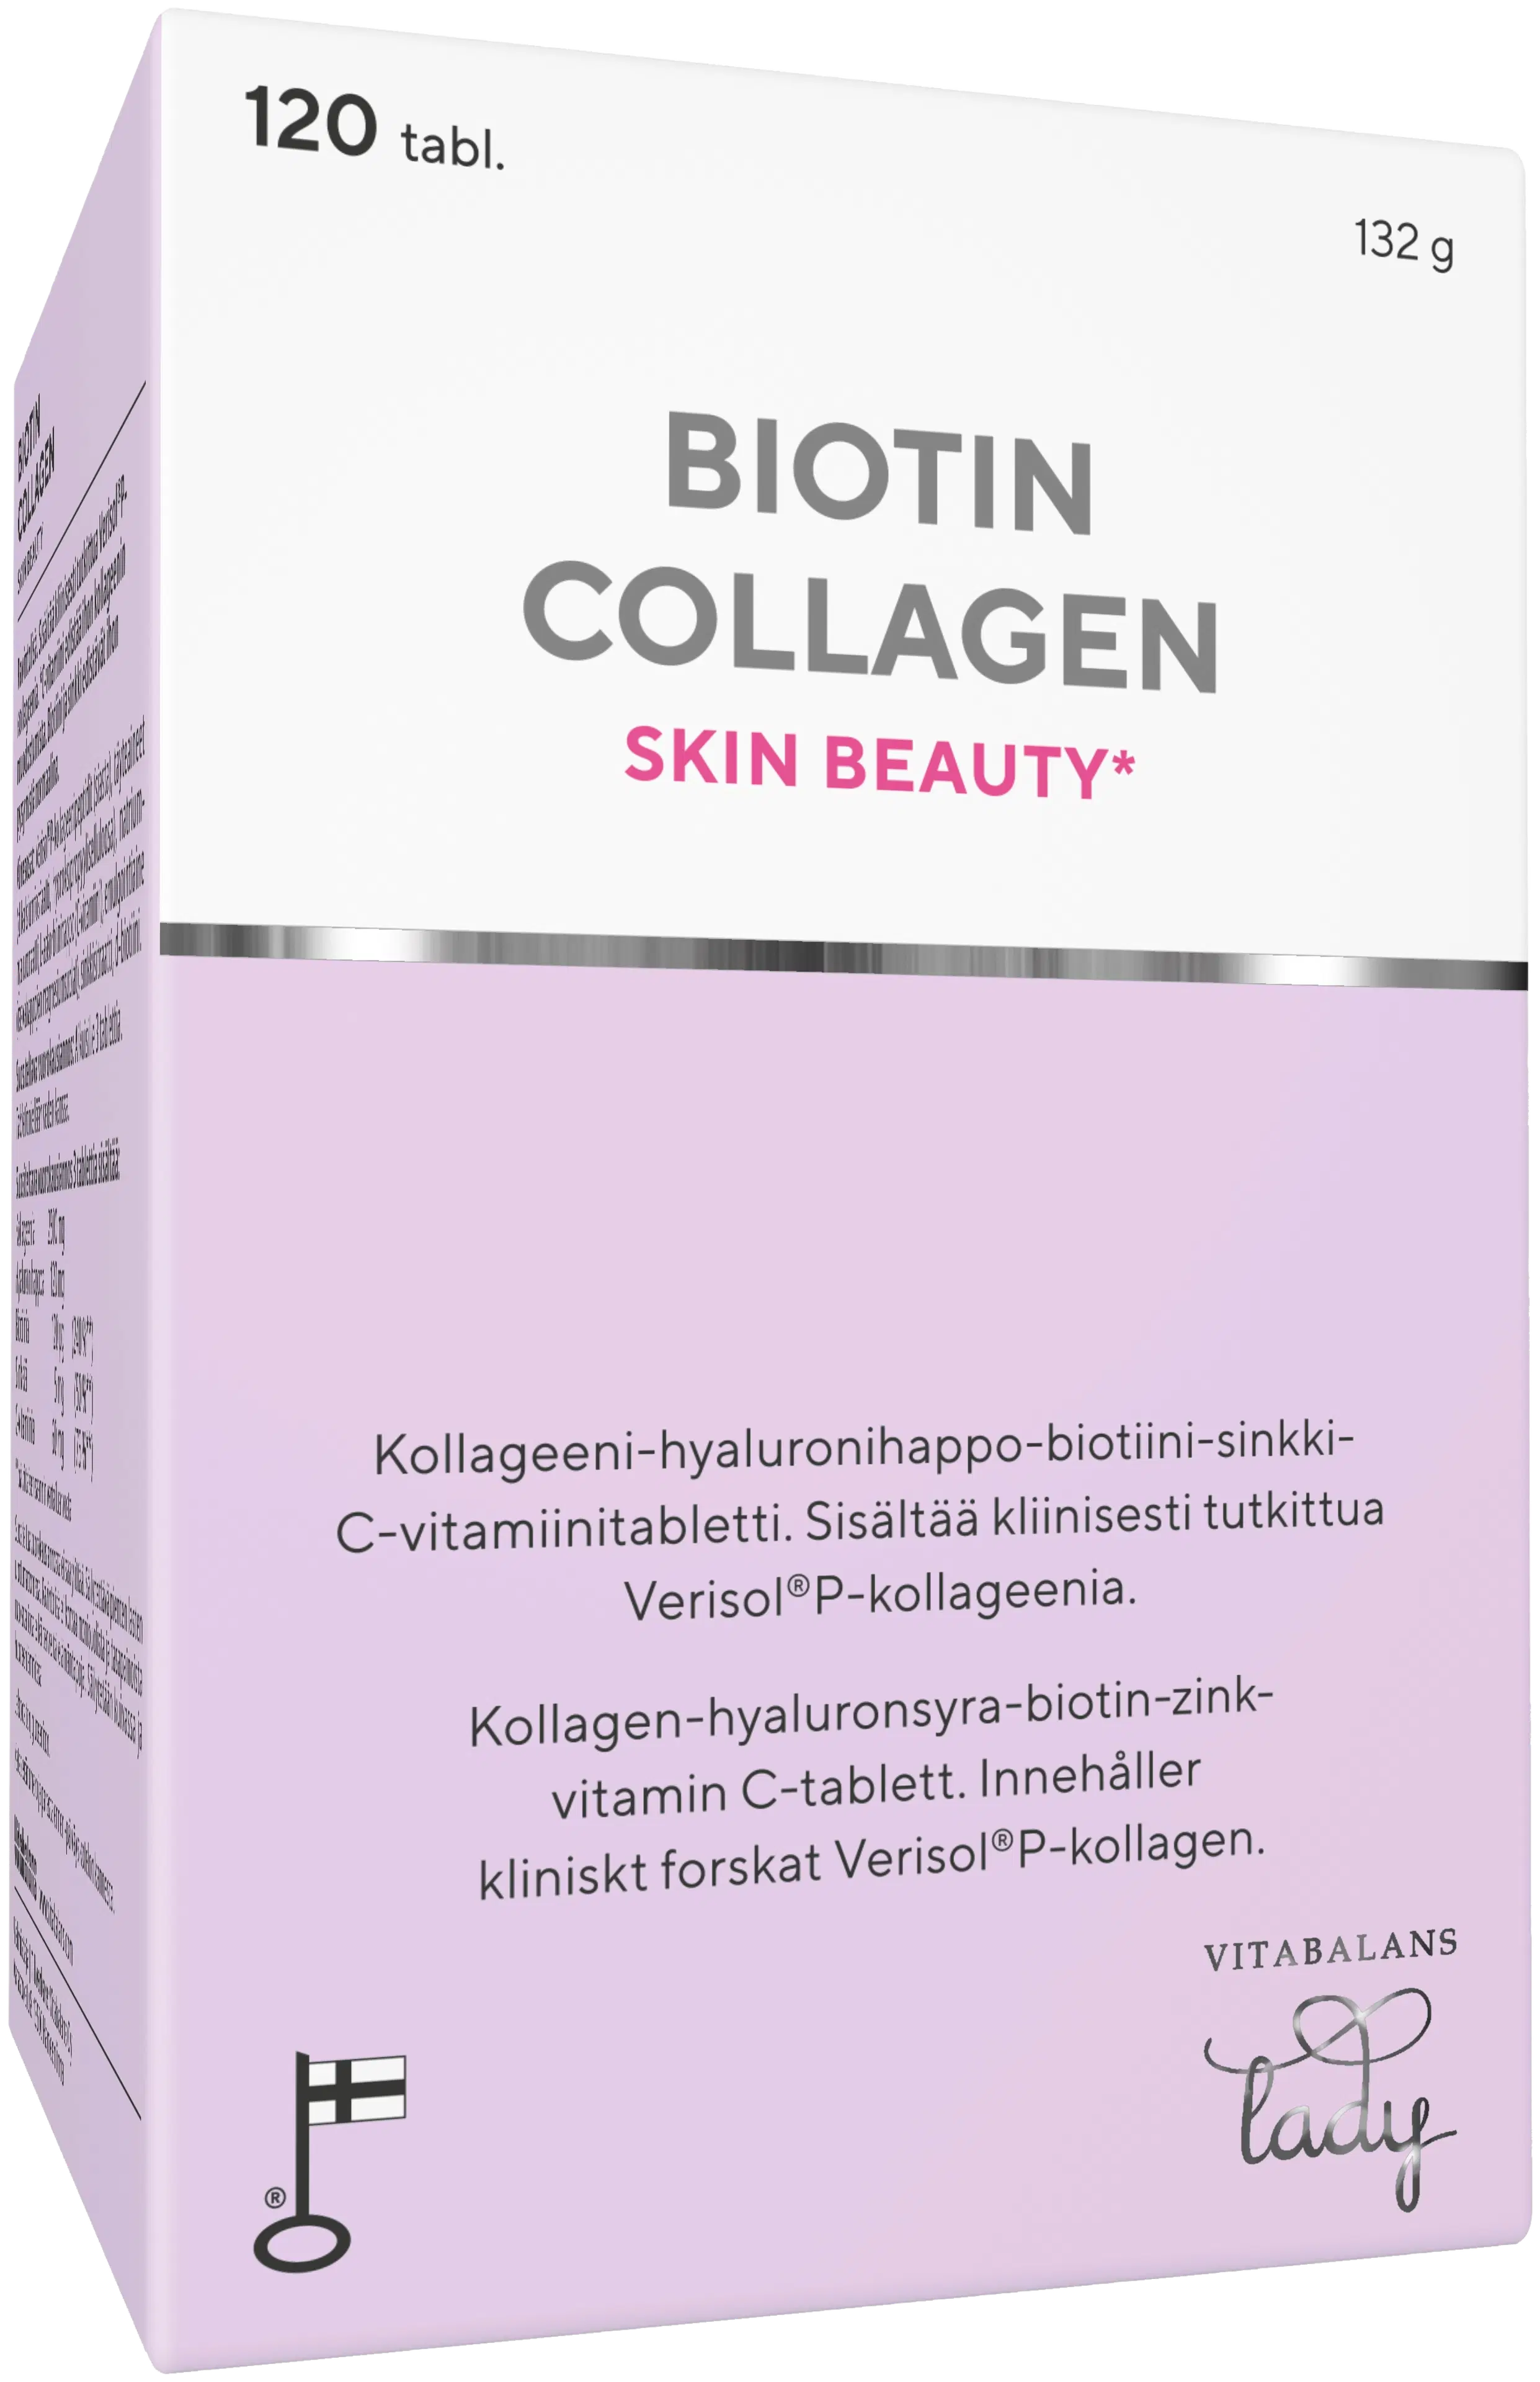 Biotin Collagen 120 tabl., kotimainen kollageeni-hyaluronihappo-biotiini-sinkki-C-vitamiini tabletti,  Vitabalans